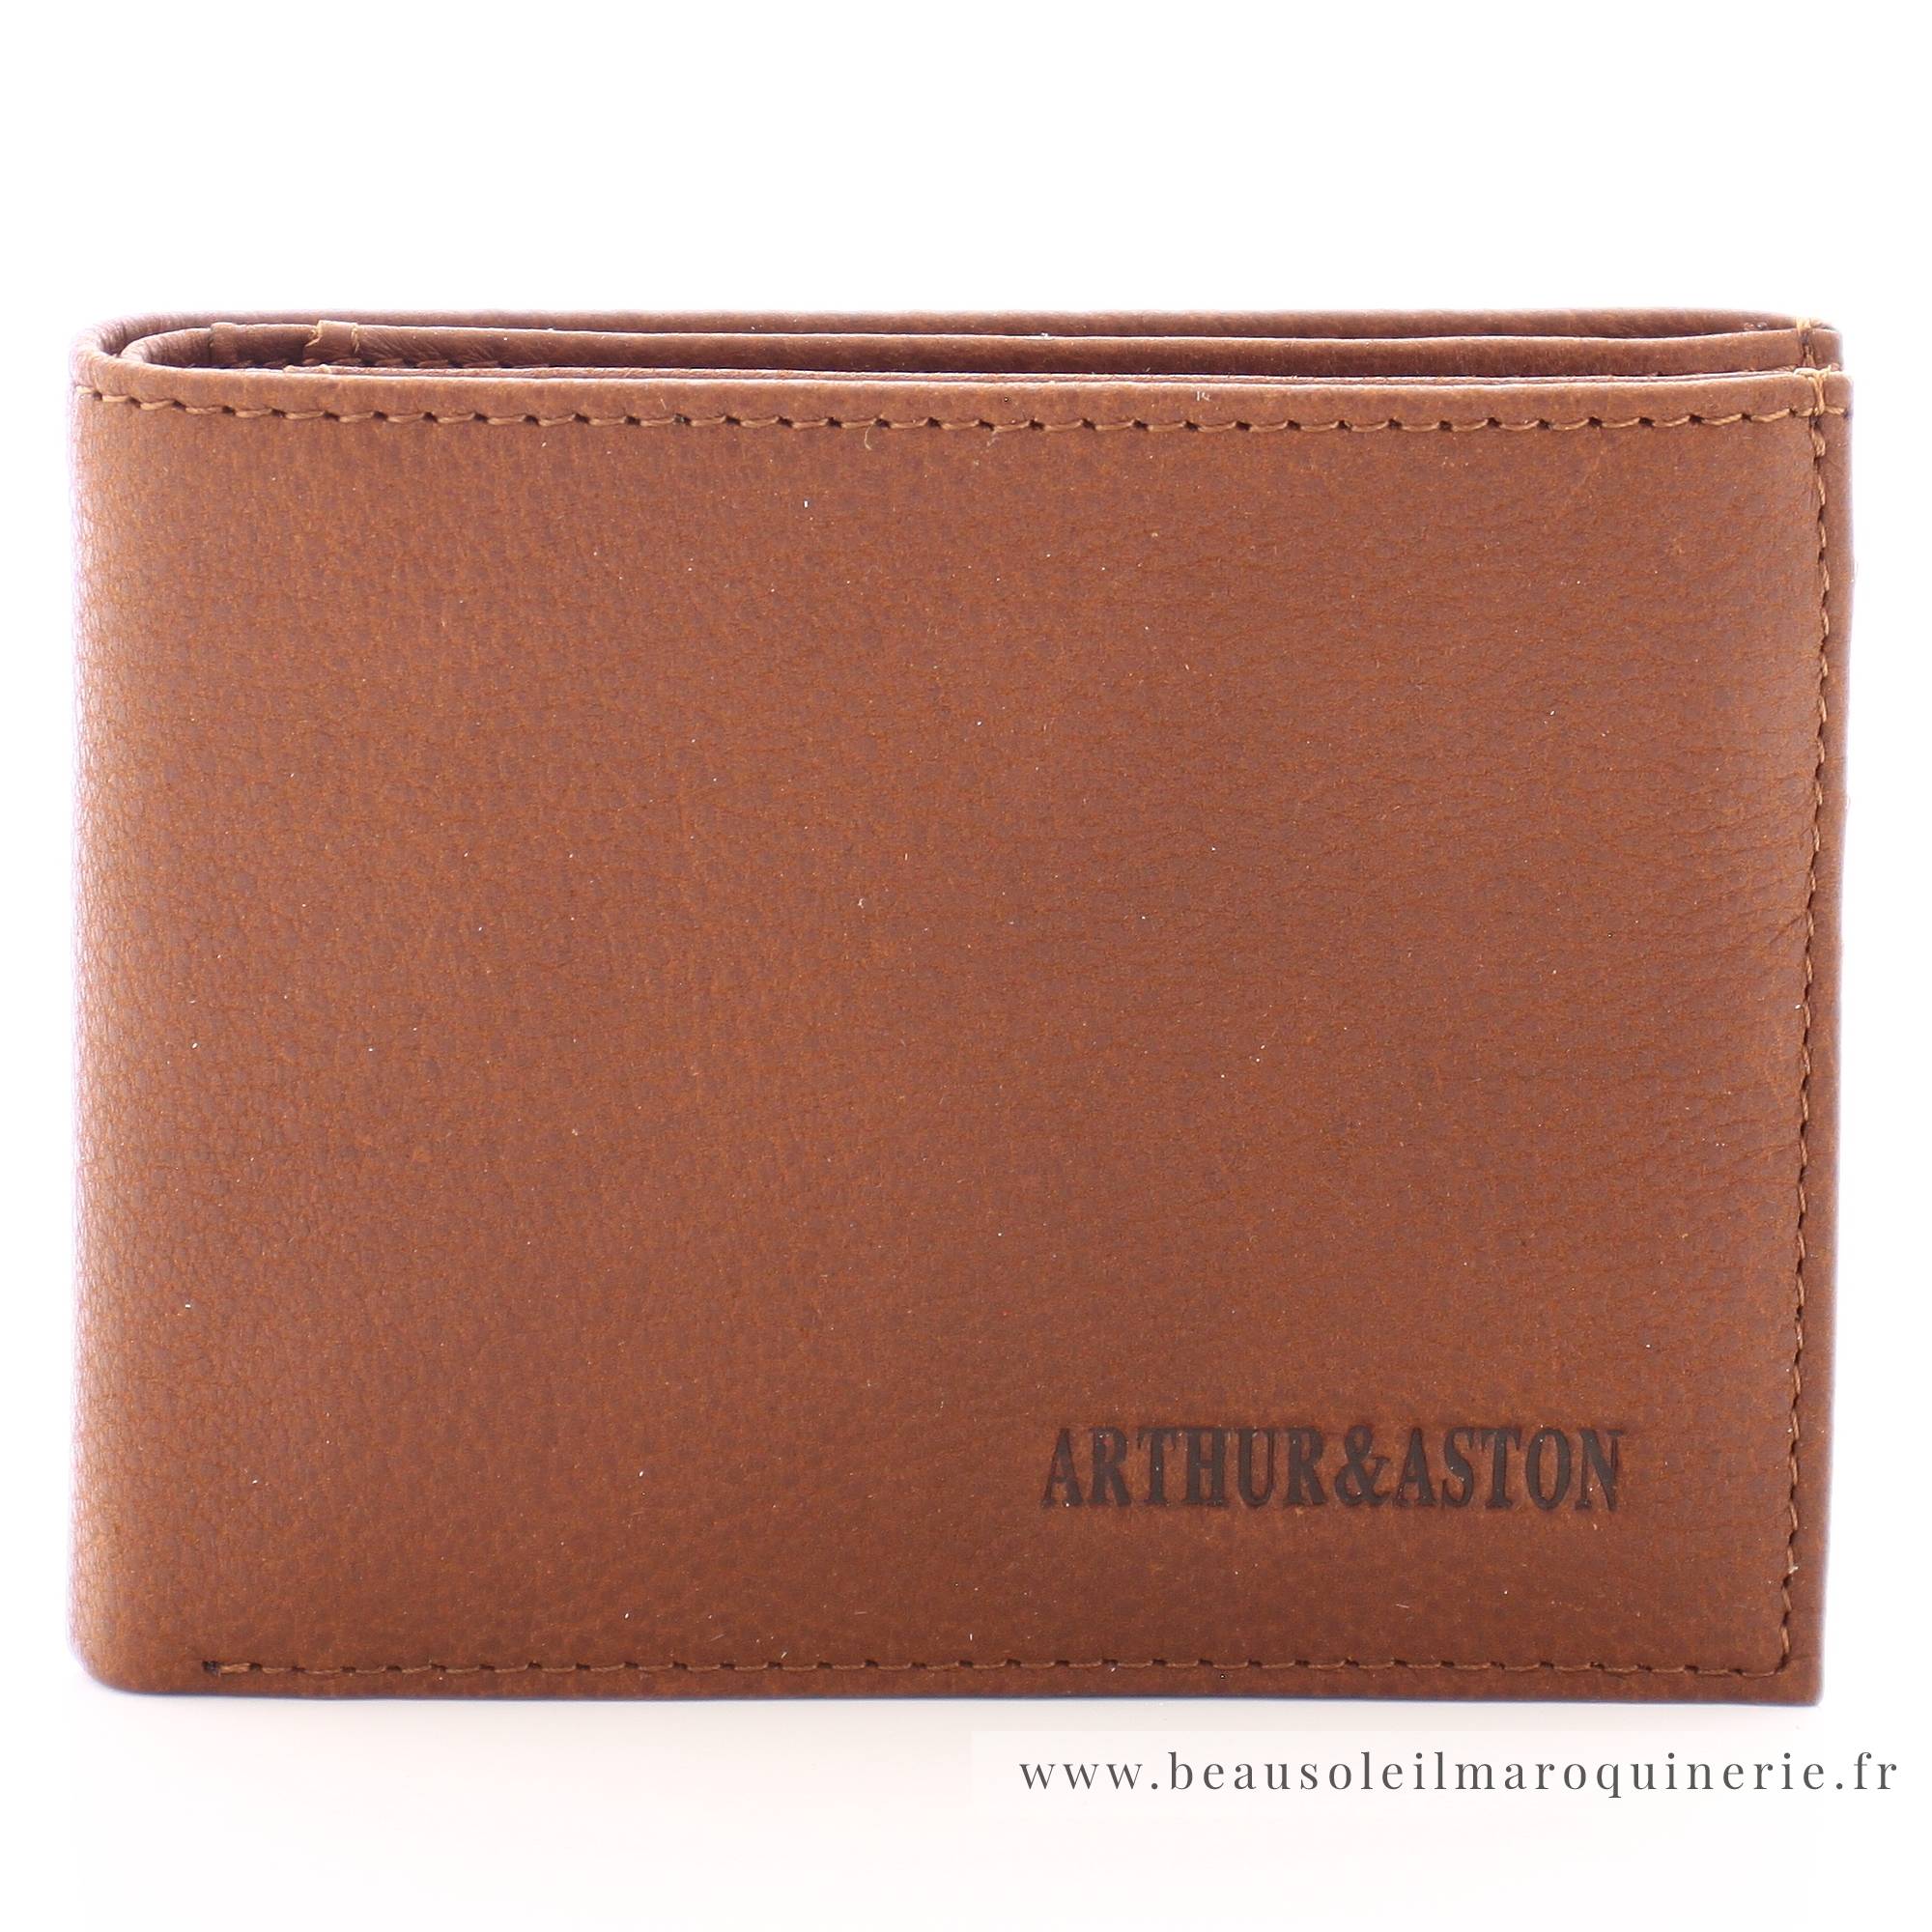 Portefeuille horizontal en cuir Arthur & Aston Oscar 1978-573-B cognac vue de face